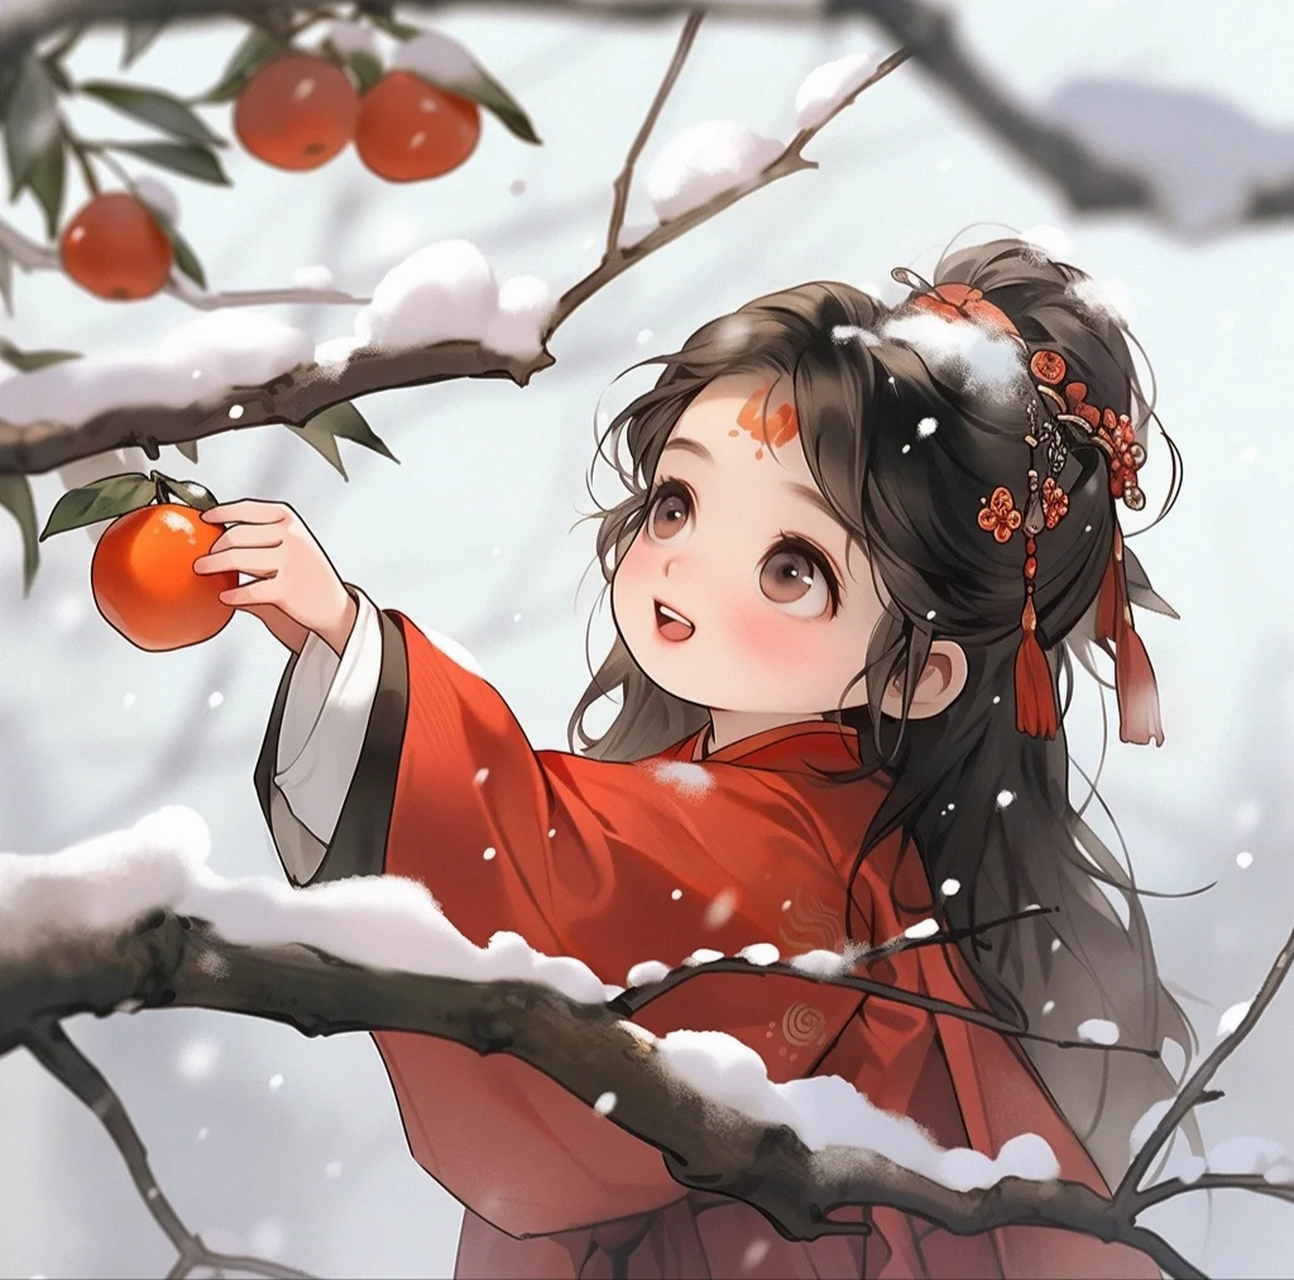 冬季卡通形象,柿柿如意系列头像分享!